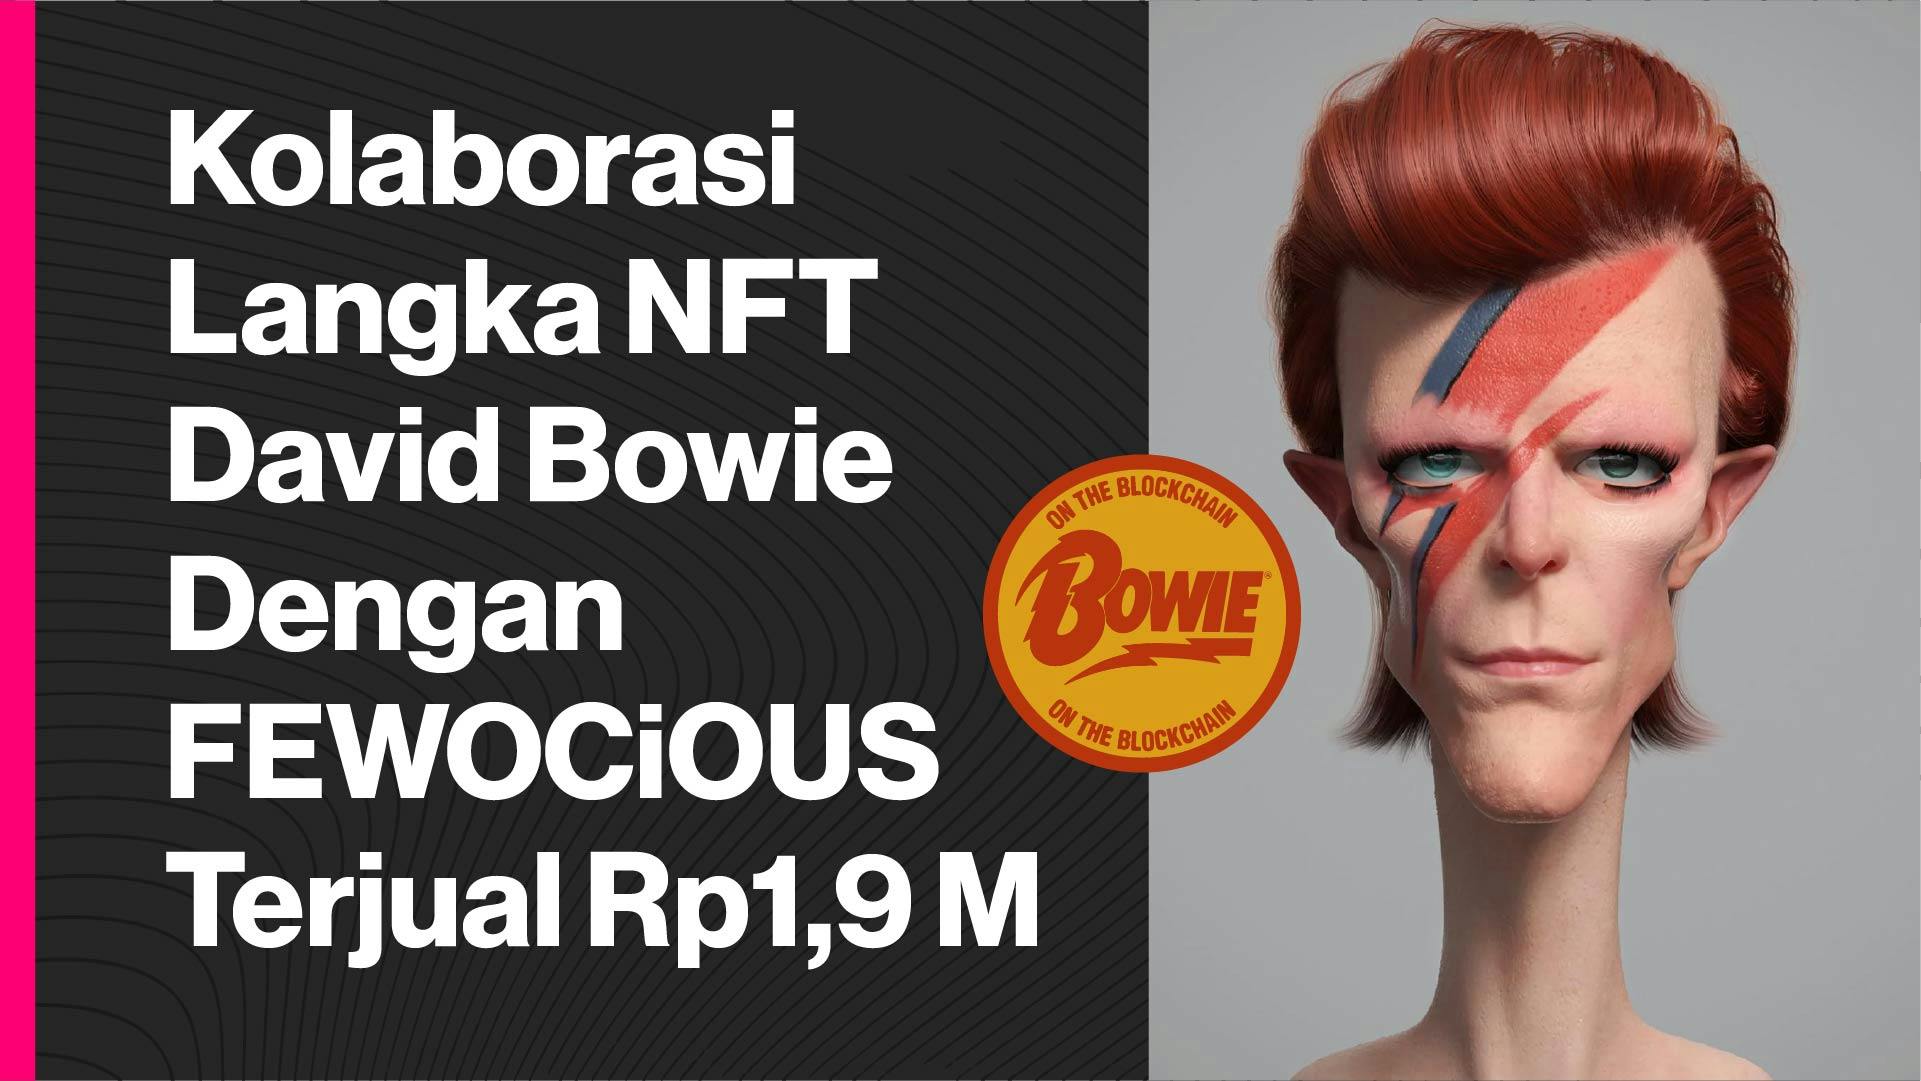 David Bowie Estate bekerja sama dengan OpenSea untuk menjual “Bowie on The Blockchain”. (Foto CDI)